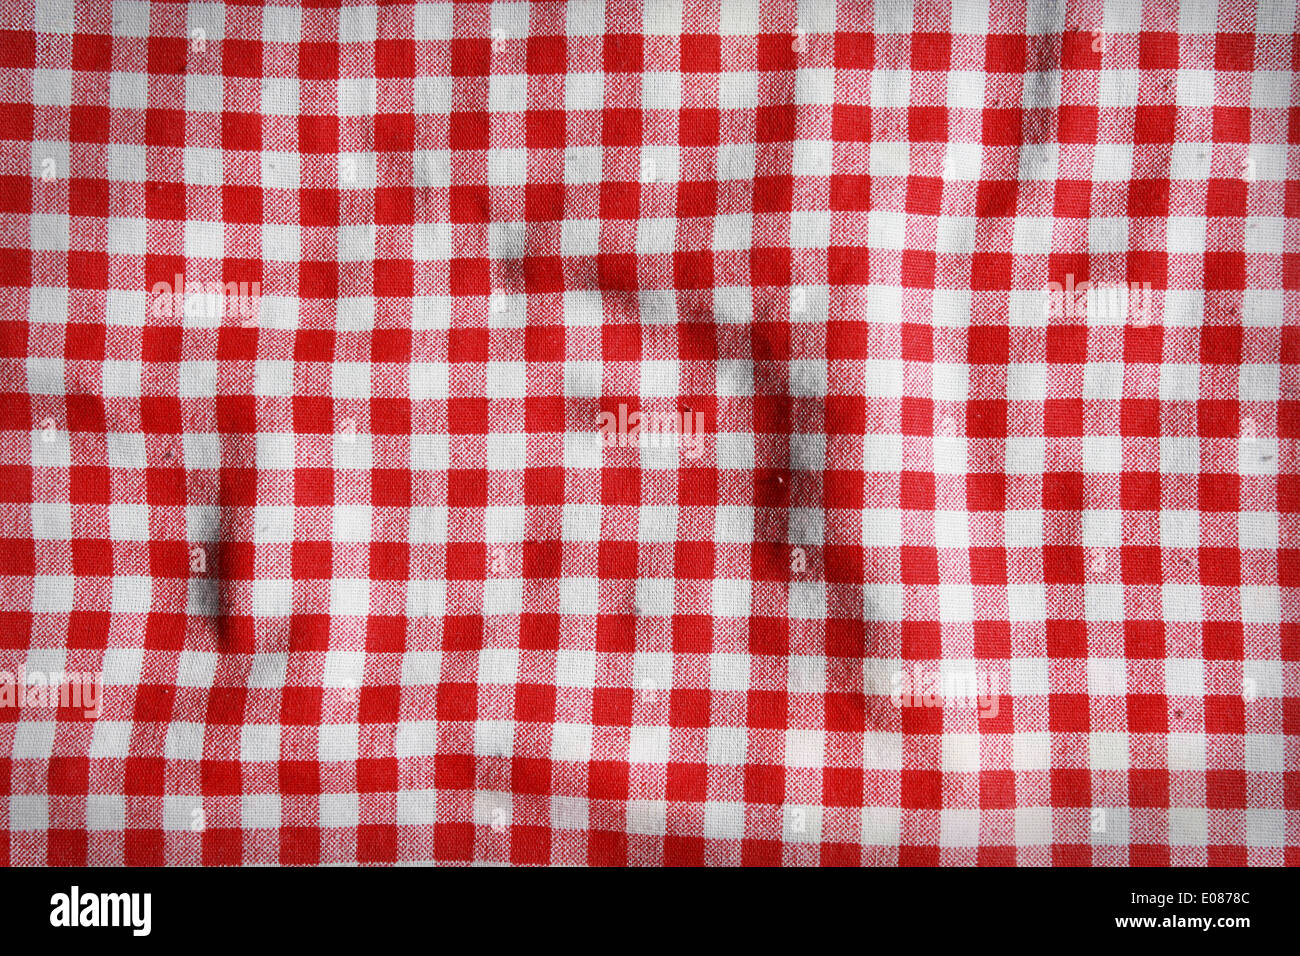 Textur von einer rot-weiß karierten Picknickdecke. Rote Wäsche zerknittert Tischdecke. Stockfoto